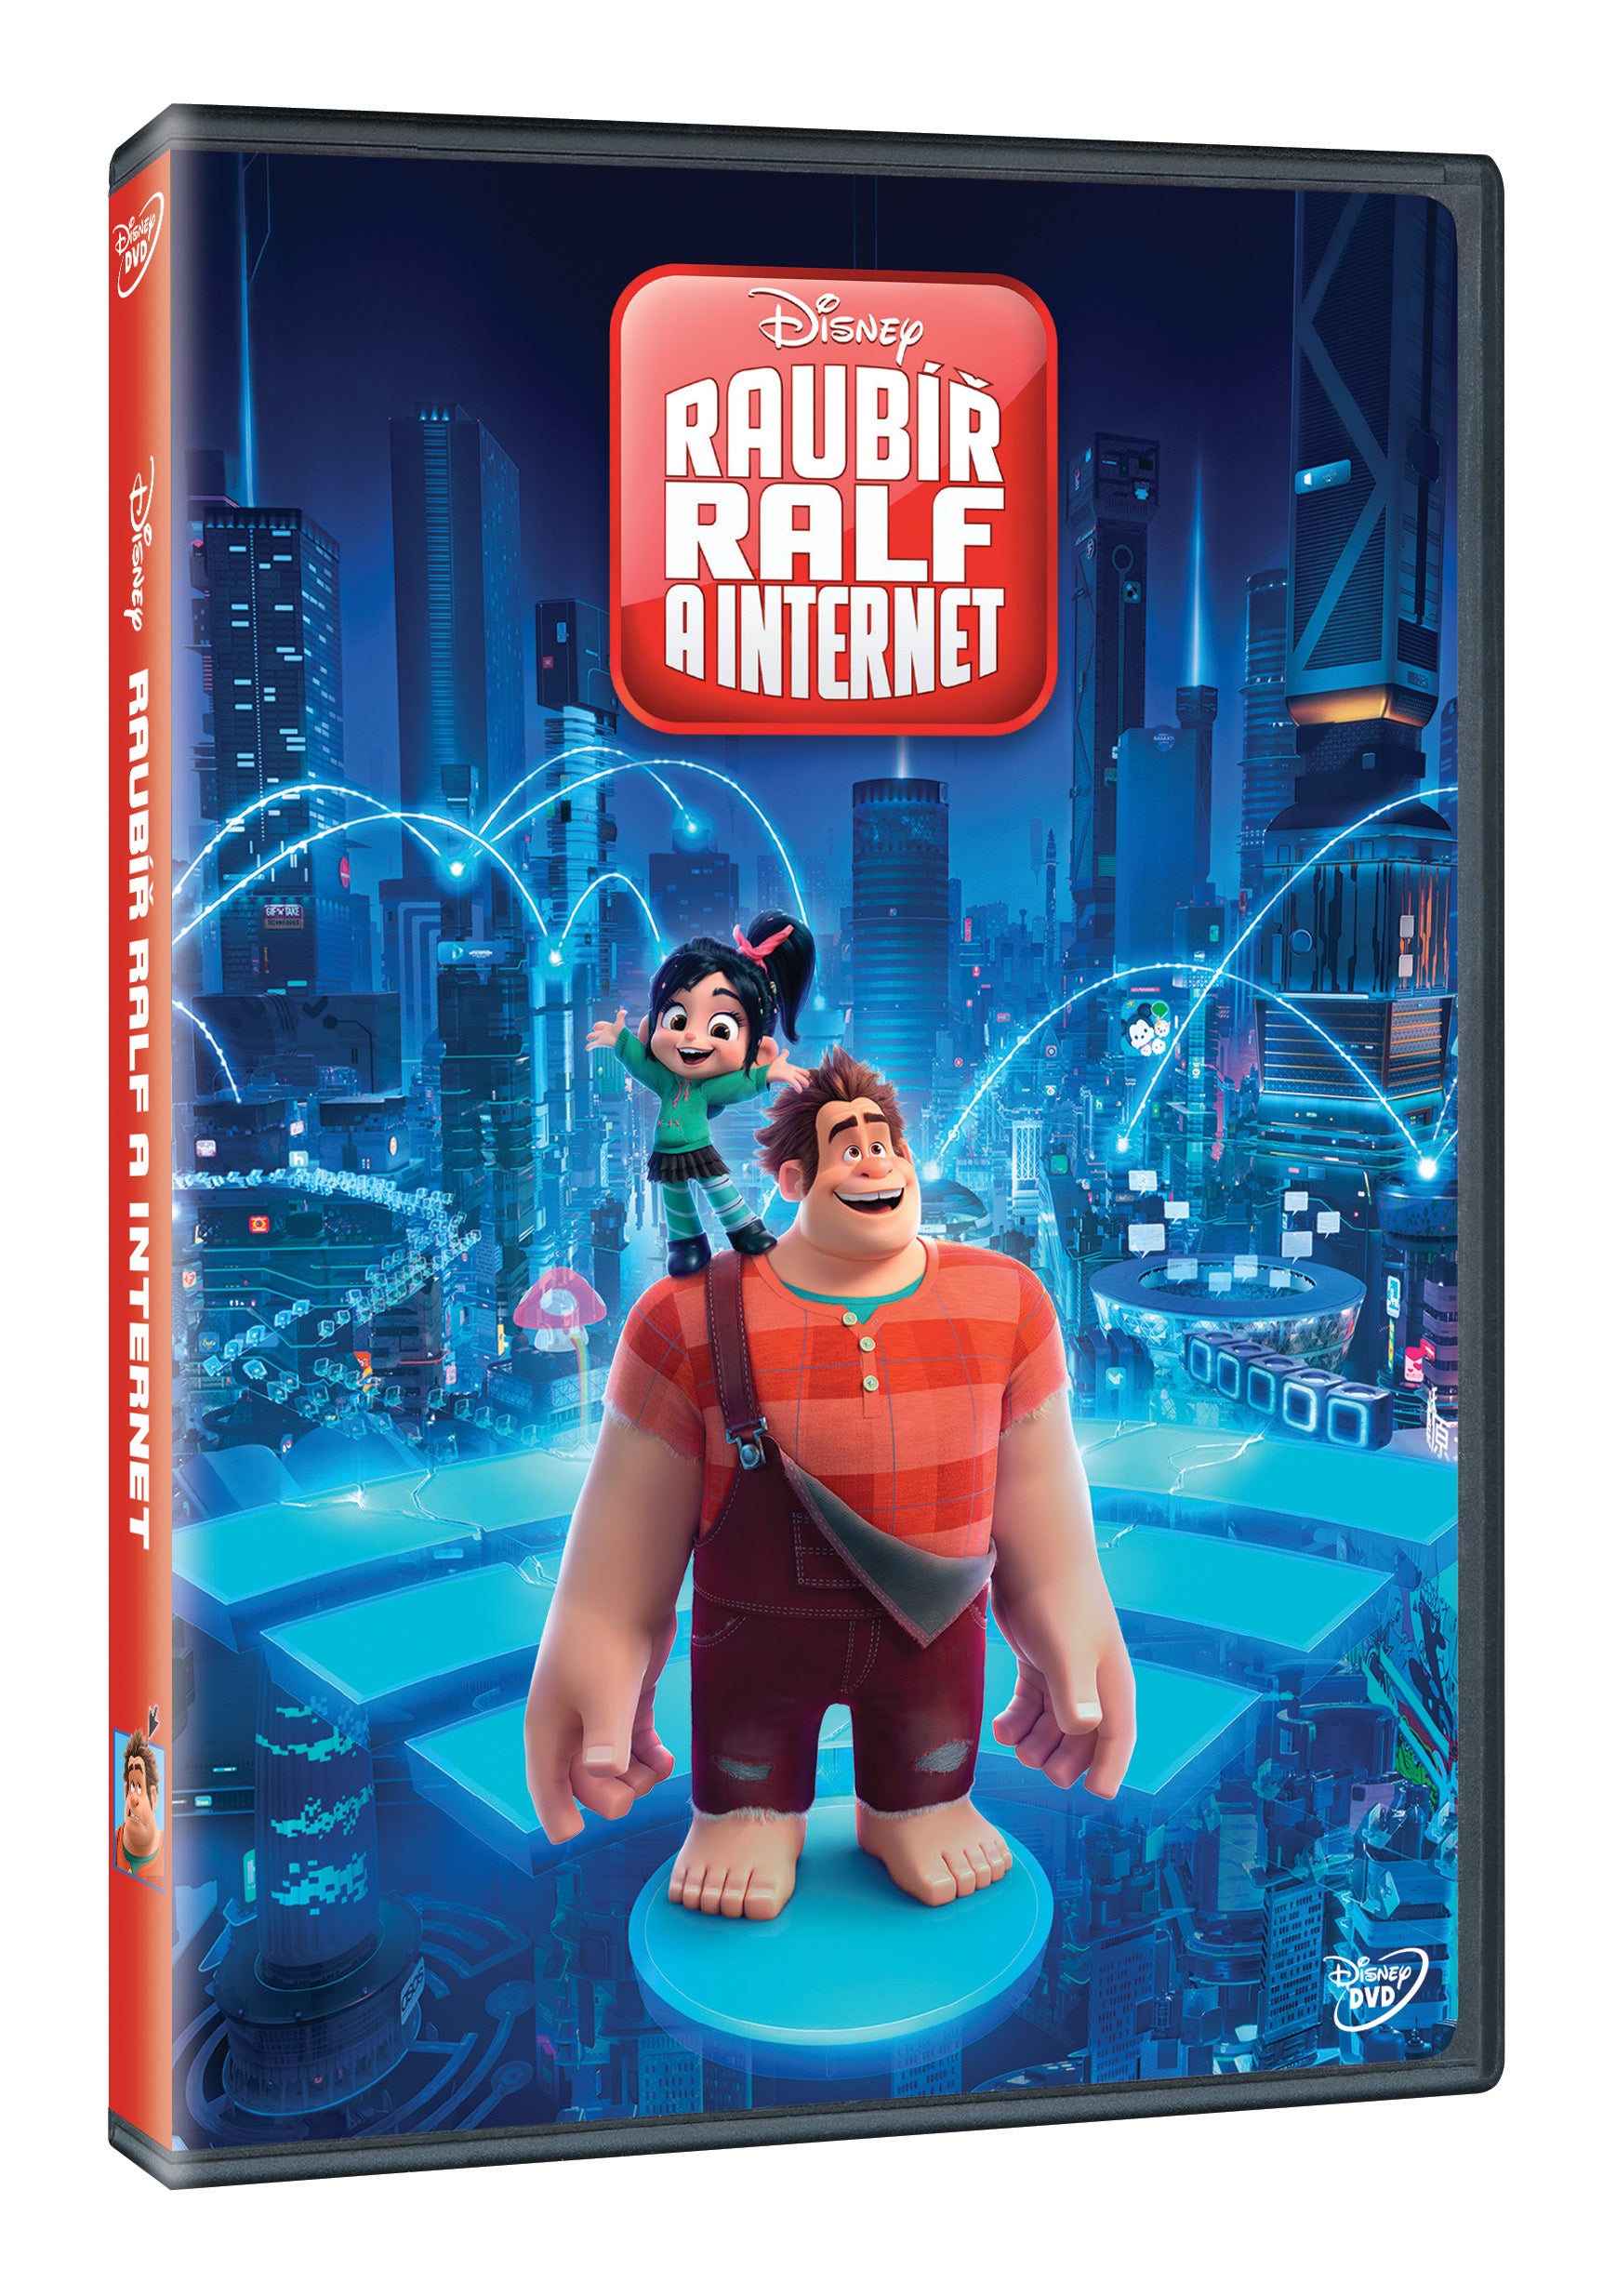 Raubir Ralf eine Internet-DVD / Ralph bricht das Internet